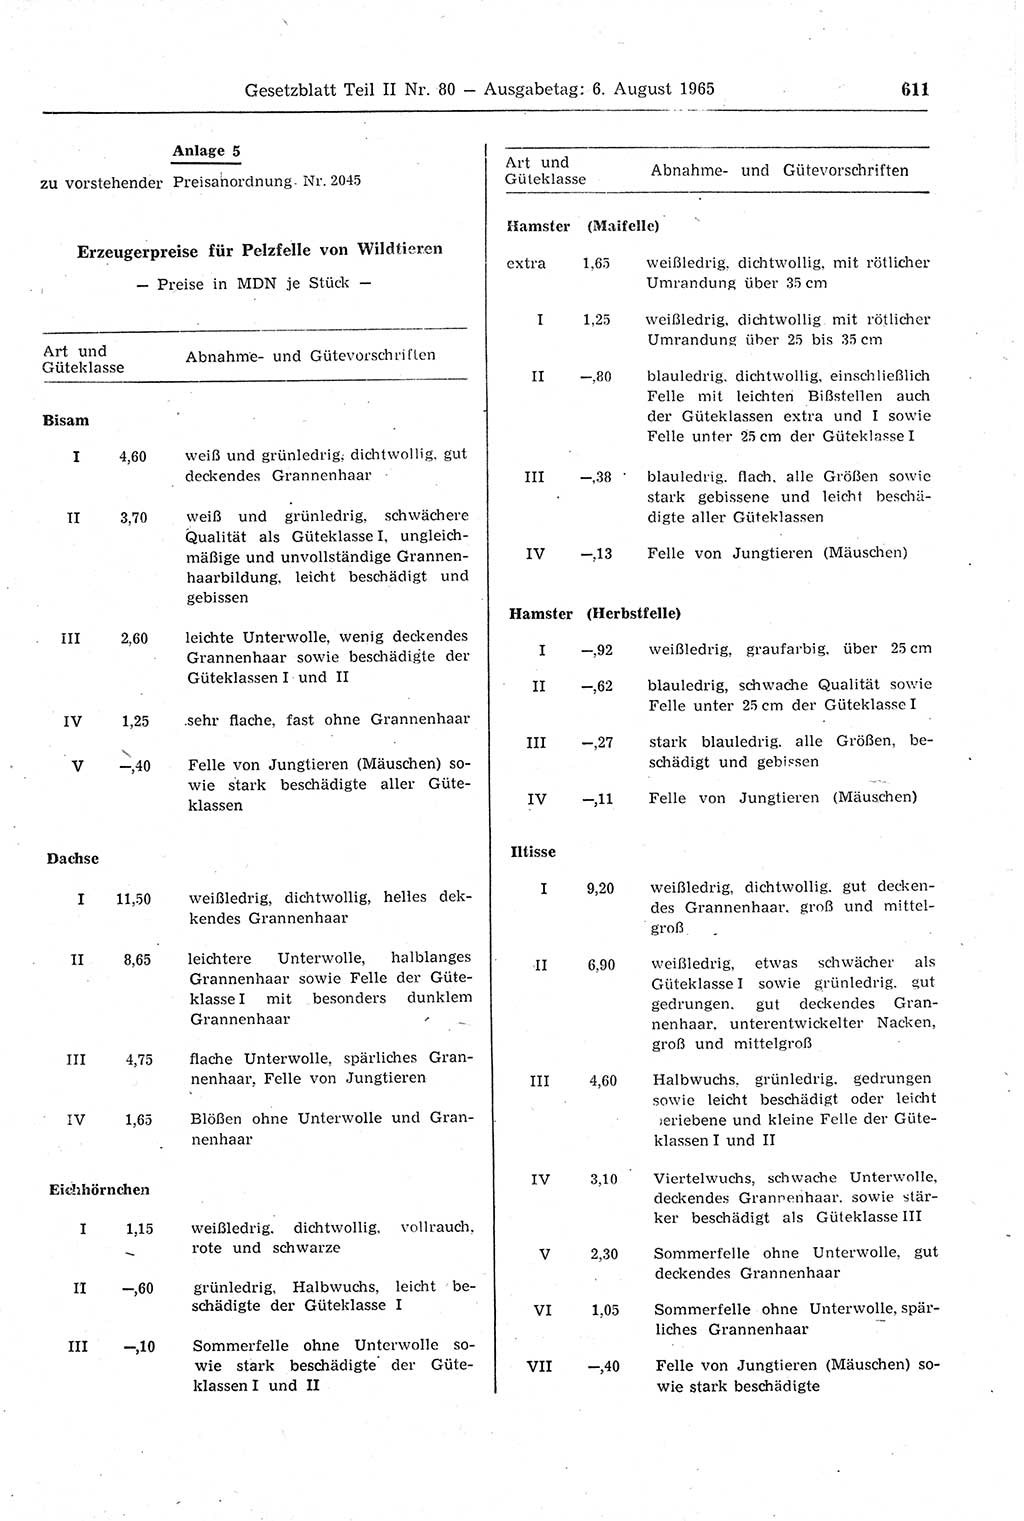 Gesetzblatt (GBl.) der Deutschen Demokratischen Republik (DDR) Teil ⅠⅠ 1965, Seite 611 (GBl. DDR ⅠⅠ 1965, S. 611)